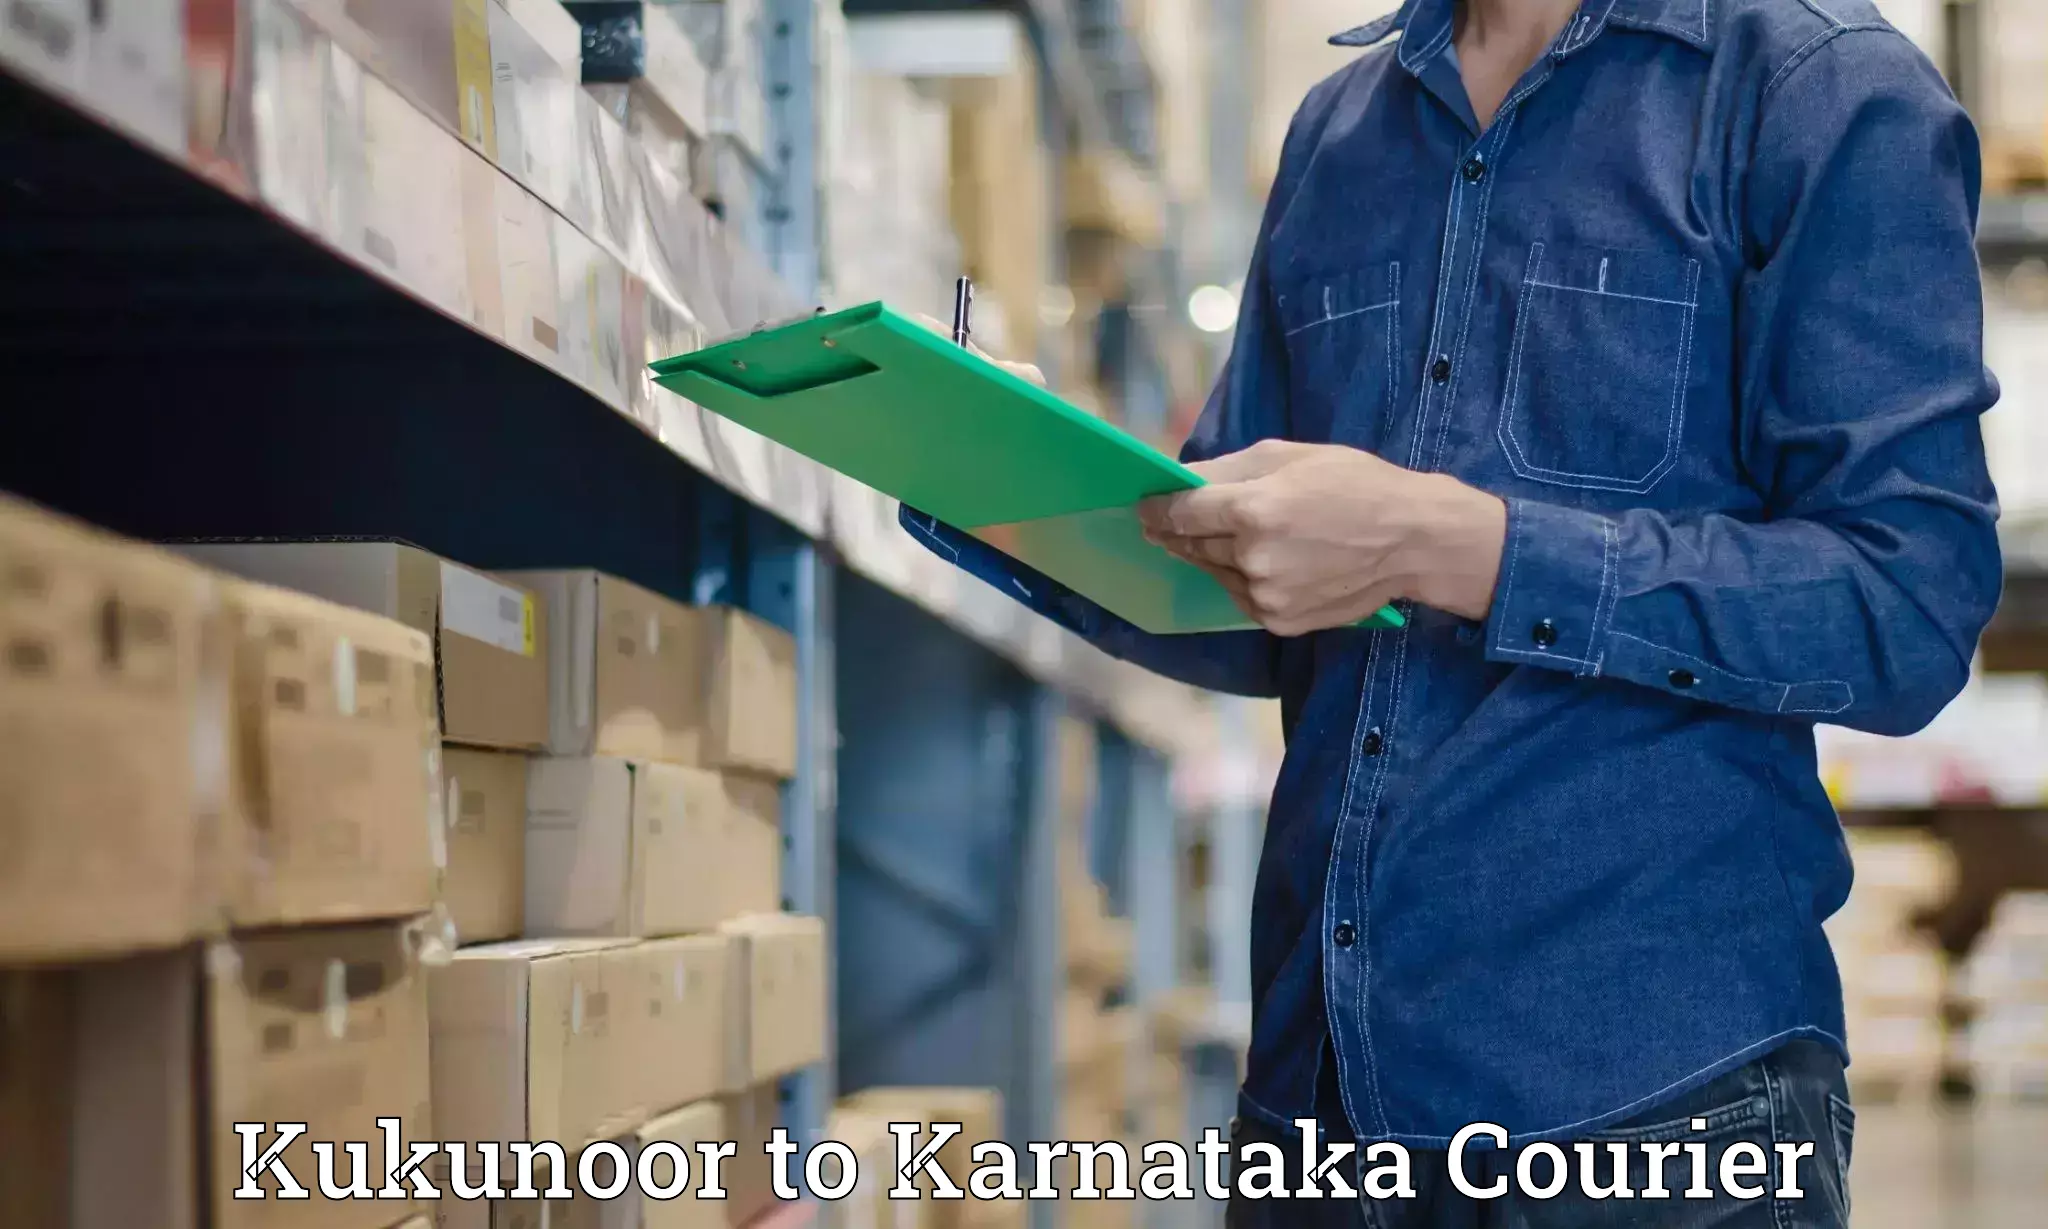 Premium courier services Kukunoor to Harpanahalli